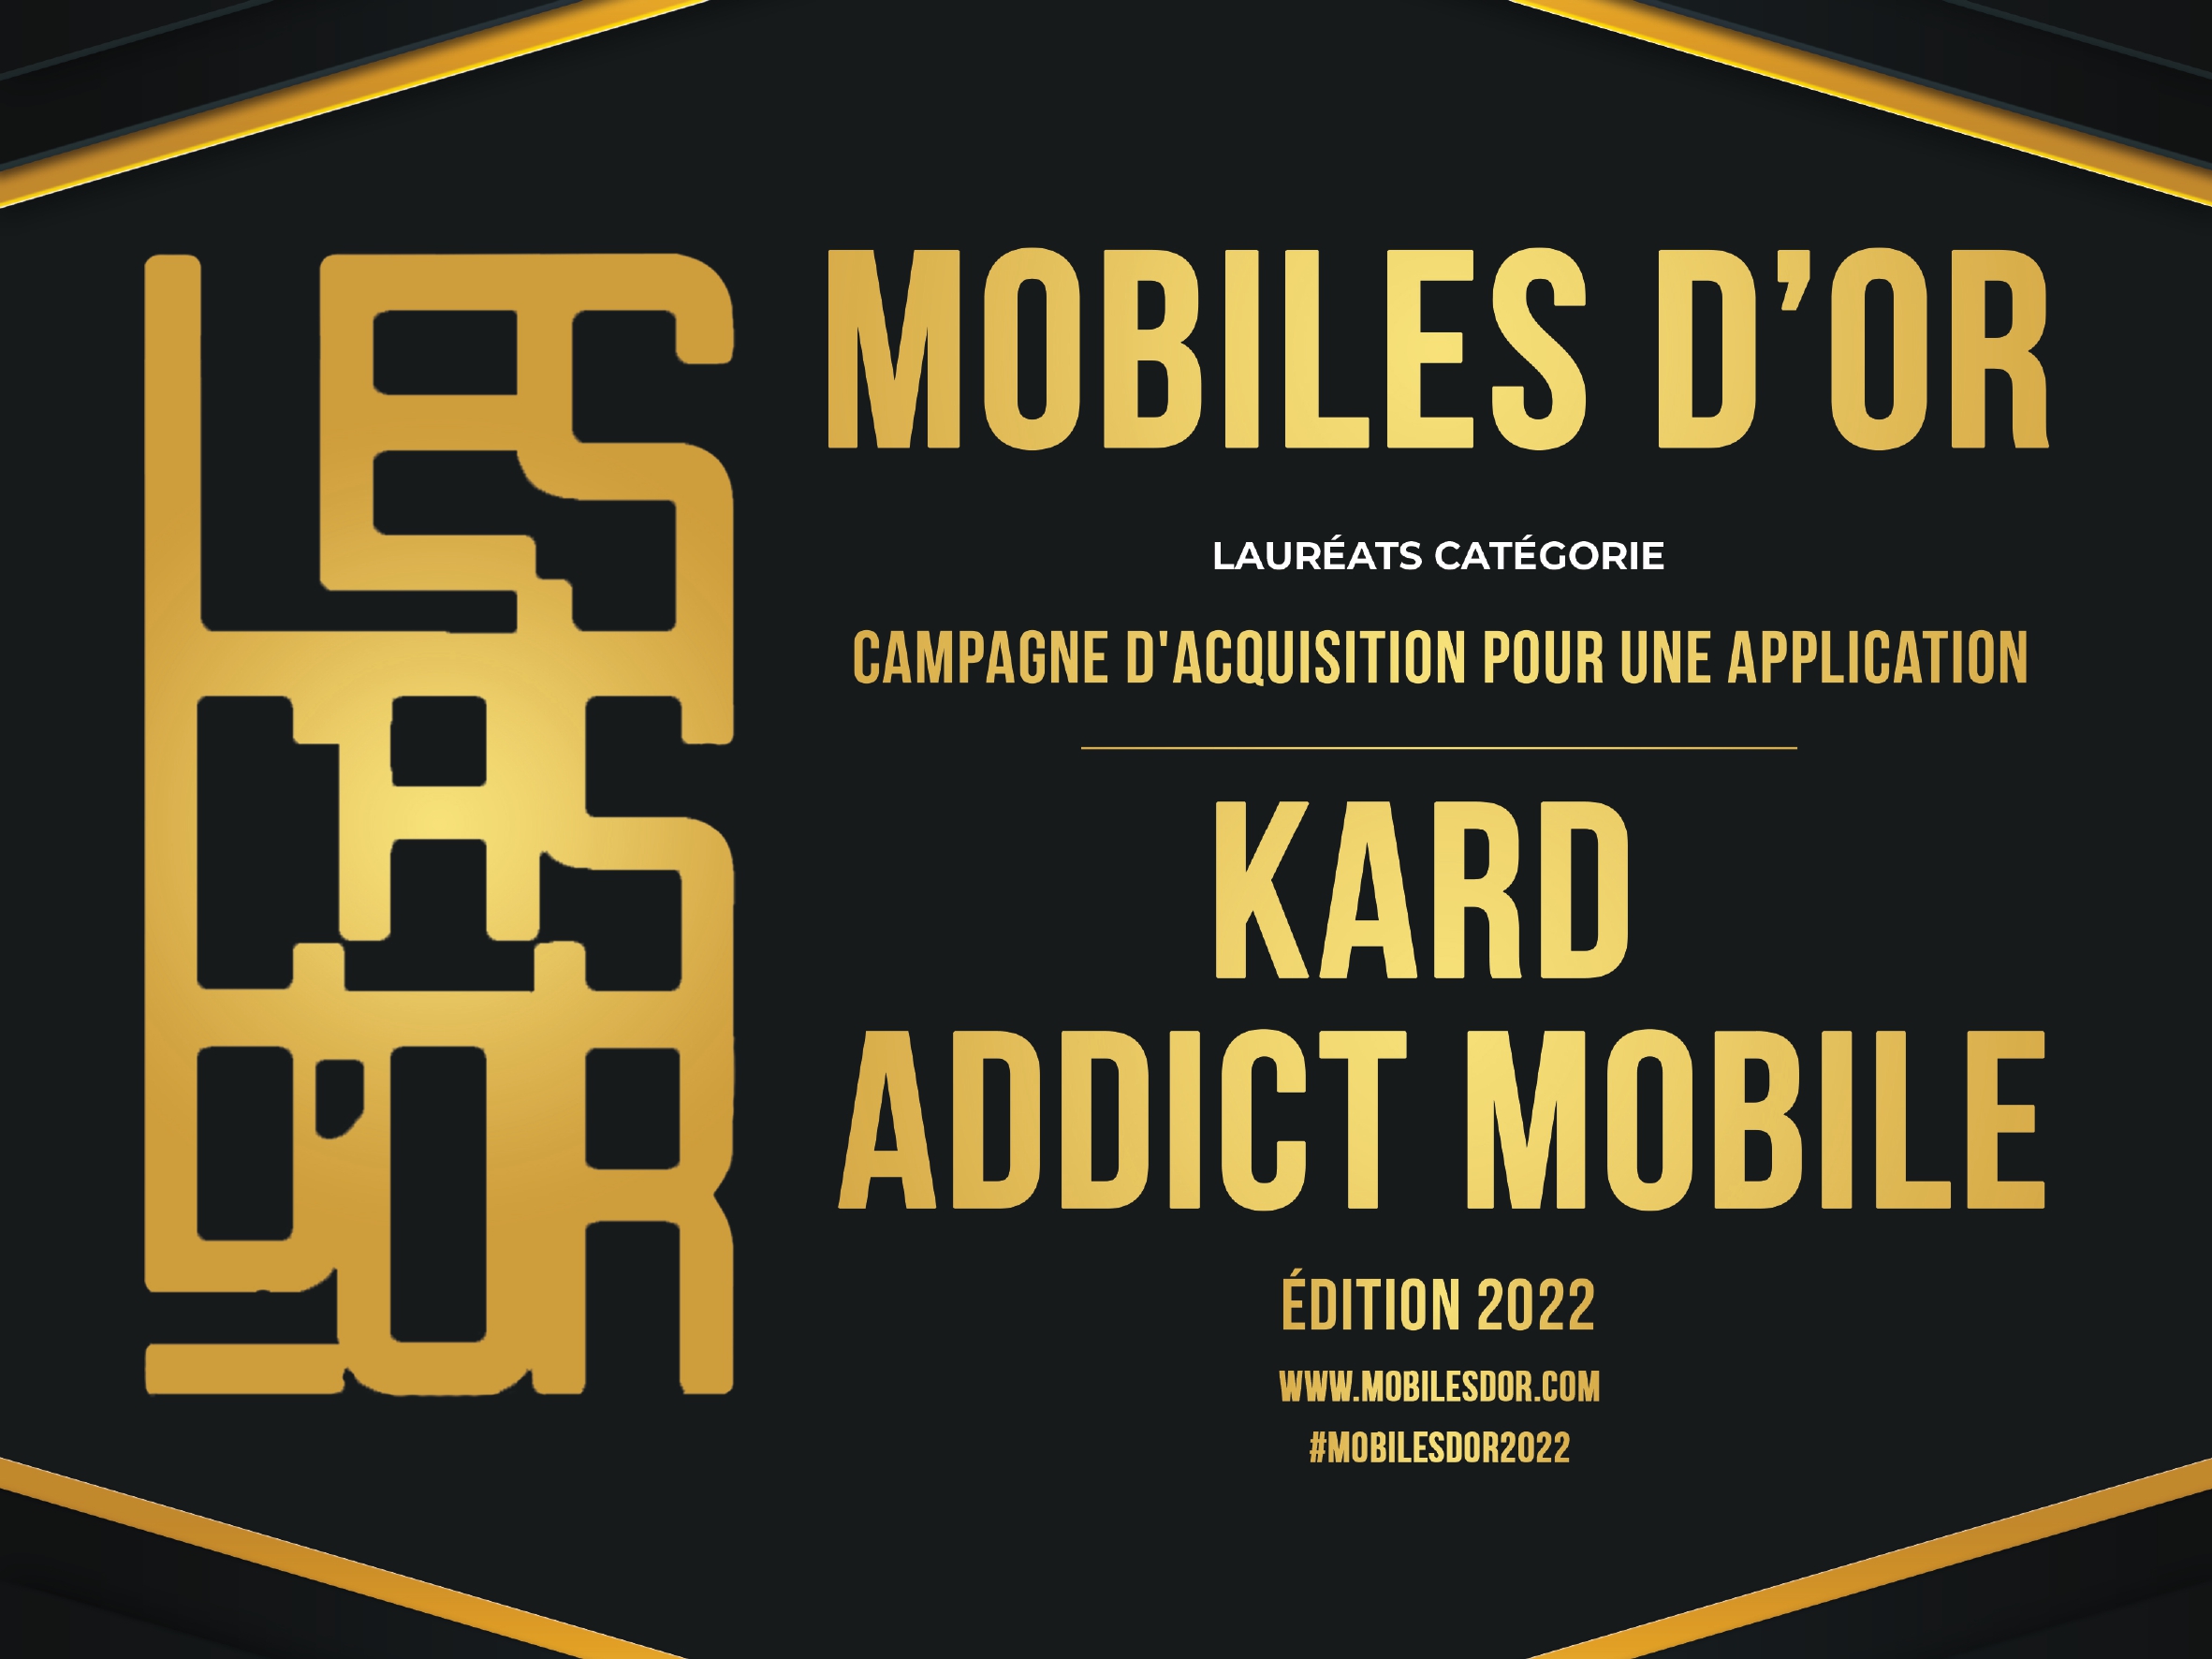 addict mobile covers campagne d'acquisition pour une application copie 1 page 0001 19